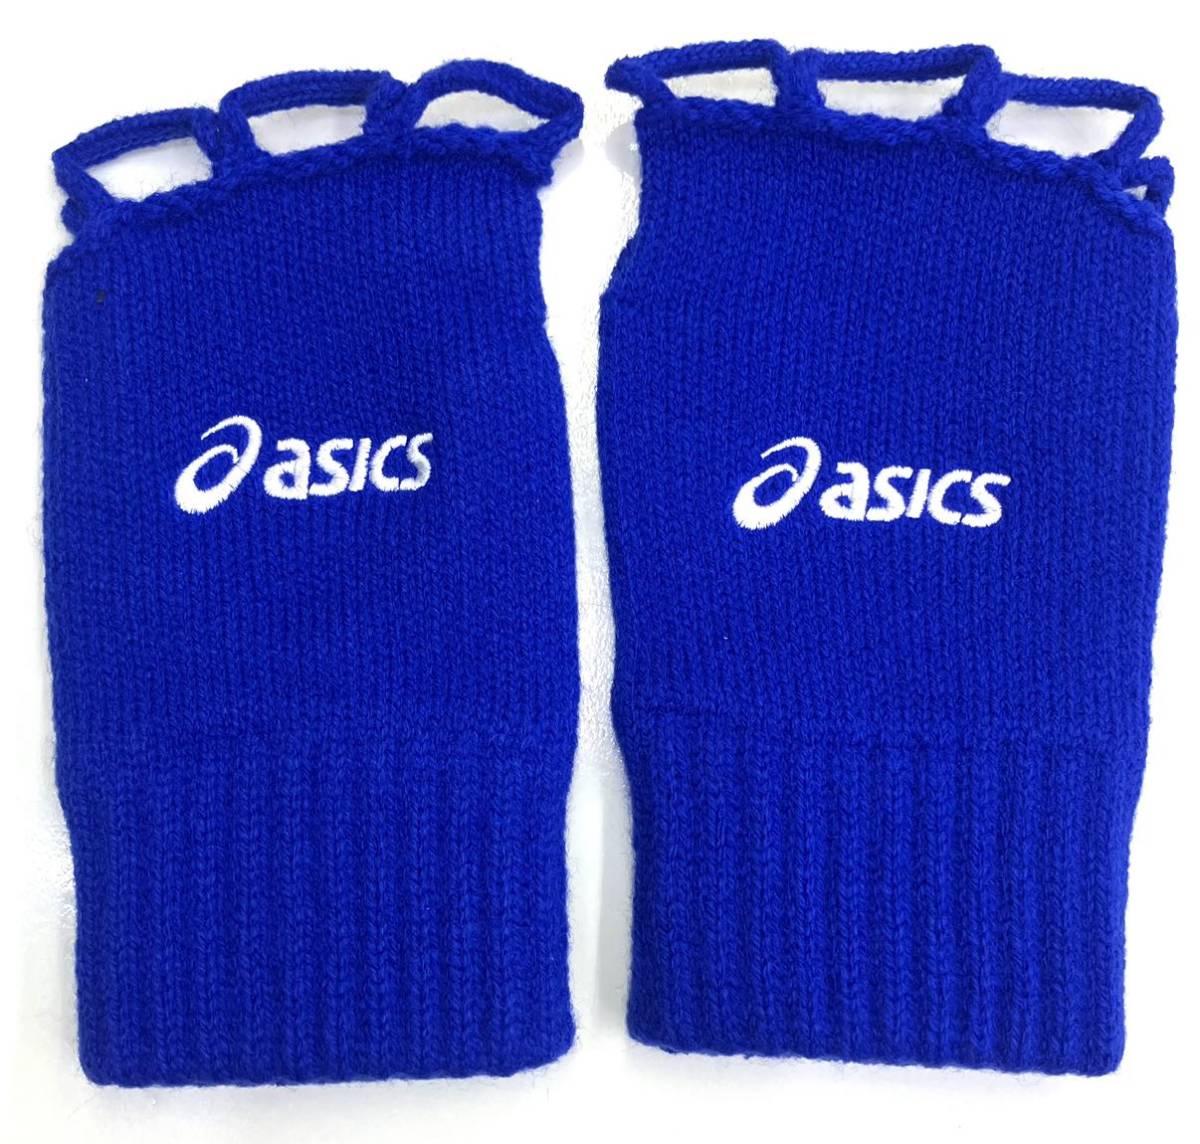  Asics рука . голубой перчатки вязаный синий баскетбол спорт обе рука аксессуары рука утеплитель для мужчин и женщин взрослый в общем баскетбол 